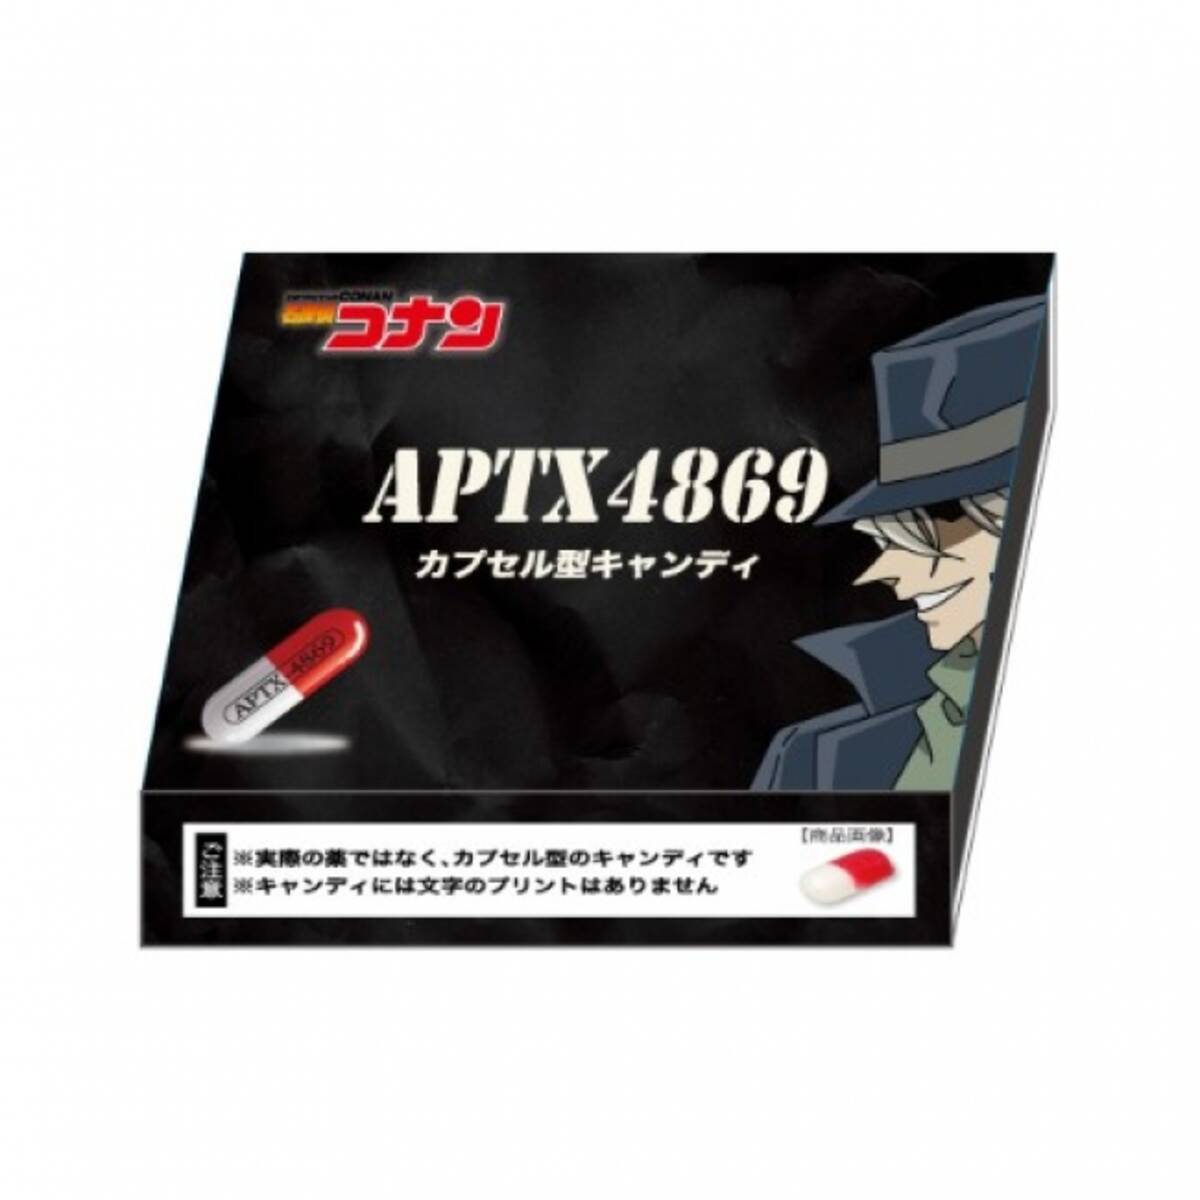 『名探偵コナン』の毒薬「APTX4869」がみんな大好きヴィレヴァンで売られている件について